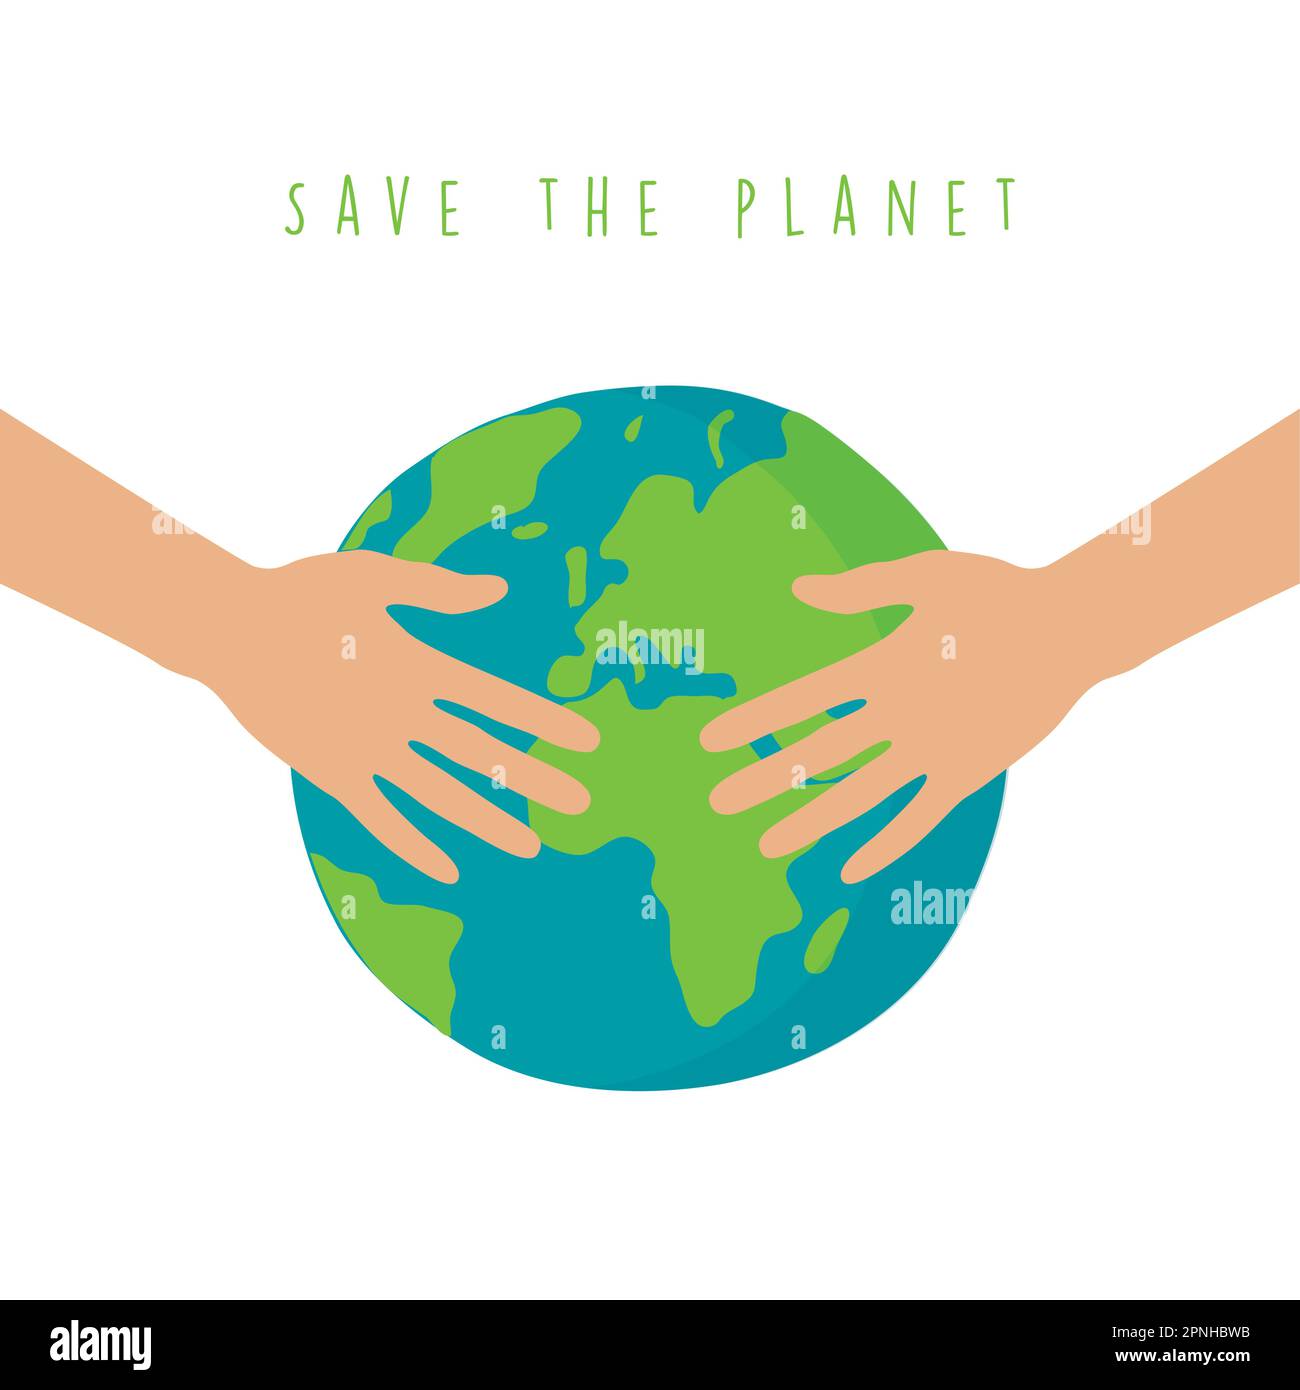 Menschliche Hände umarmen die Welt, retten den Planeten Stock Vektor